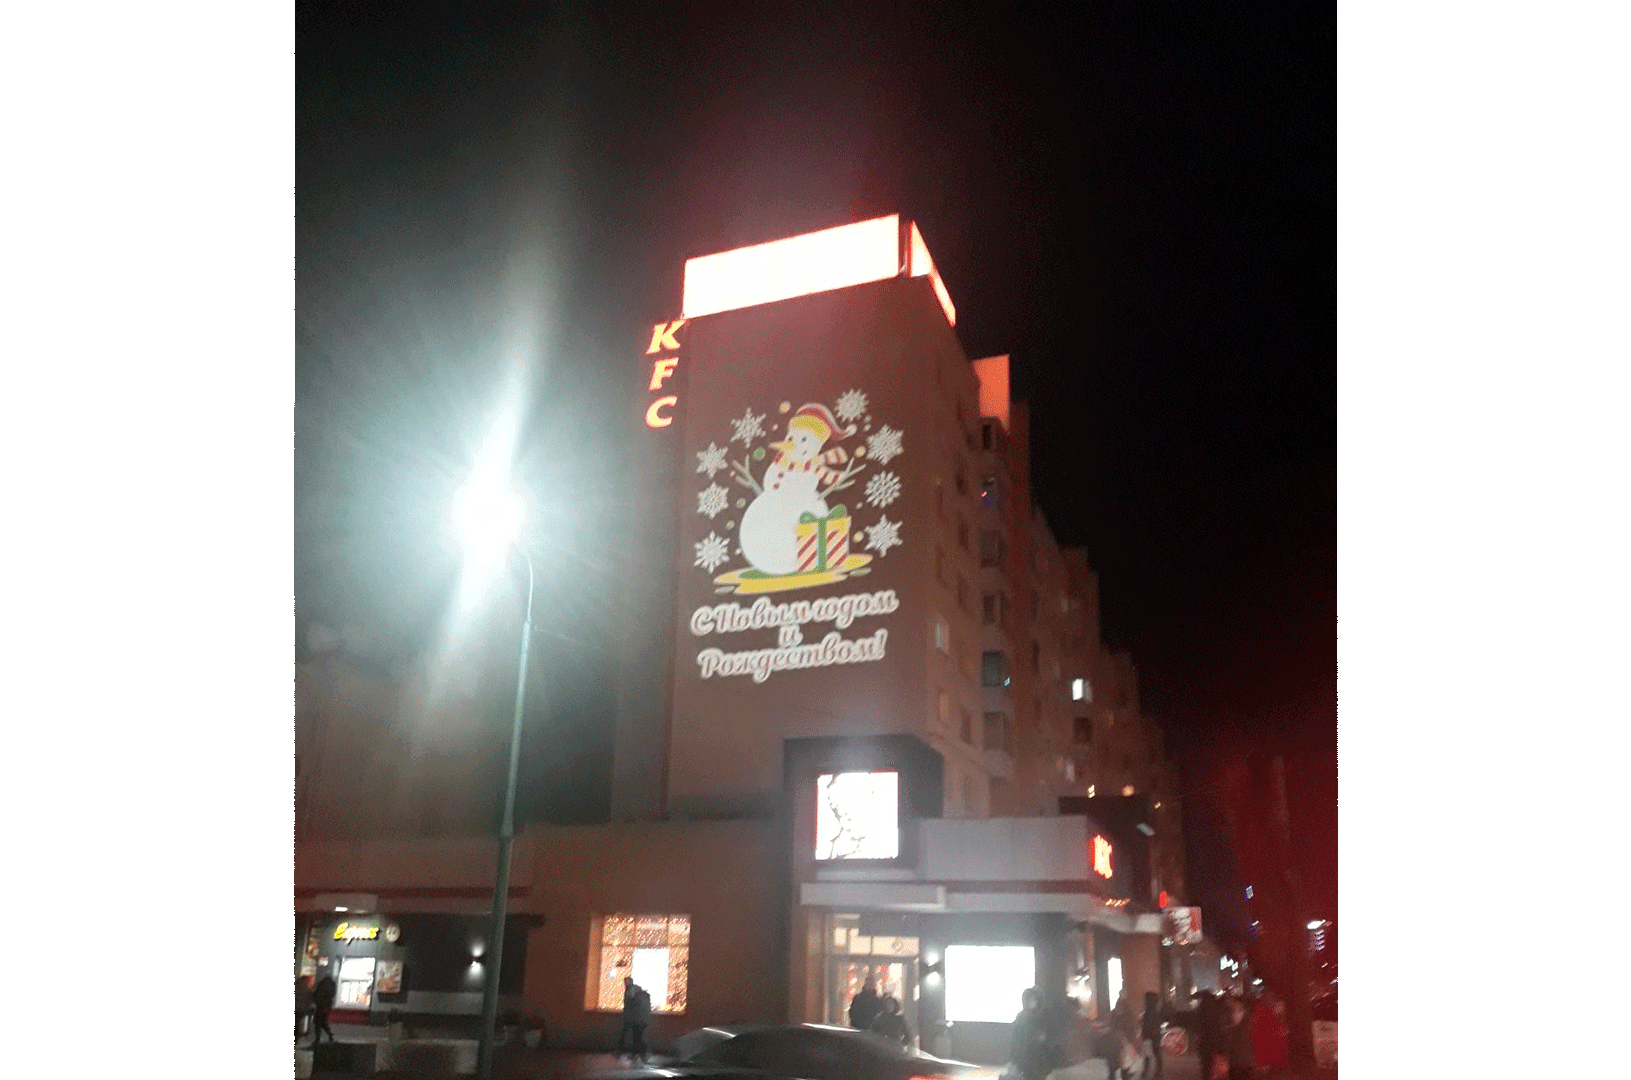 Социальная реклама на фасаде здания. <br>Поздравление с Новым годом и Рождеством. ГОБО-проектор GOSLAID 40008, вращающийся, мощностью 400Вт, рассчитан на 9 рекламных слайдов. Трехцветная проекция.